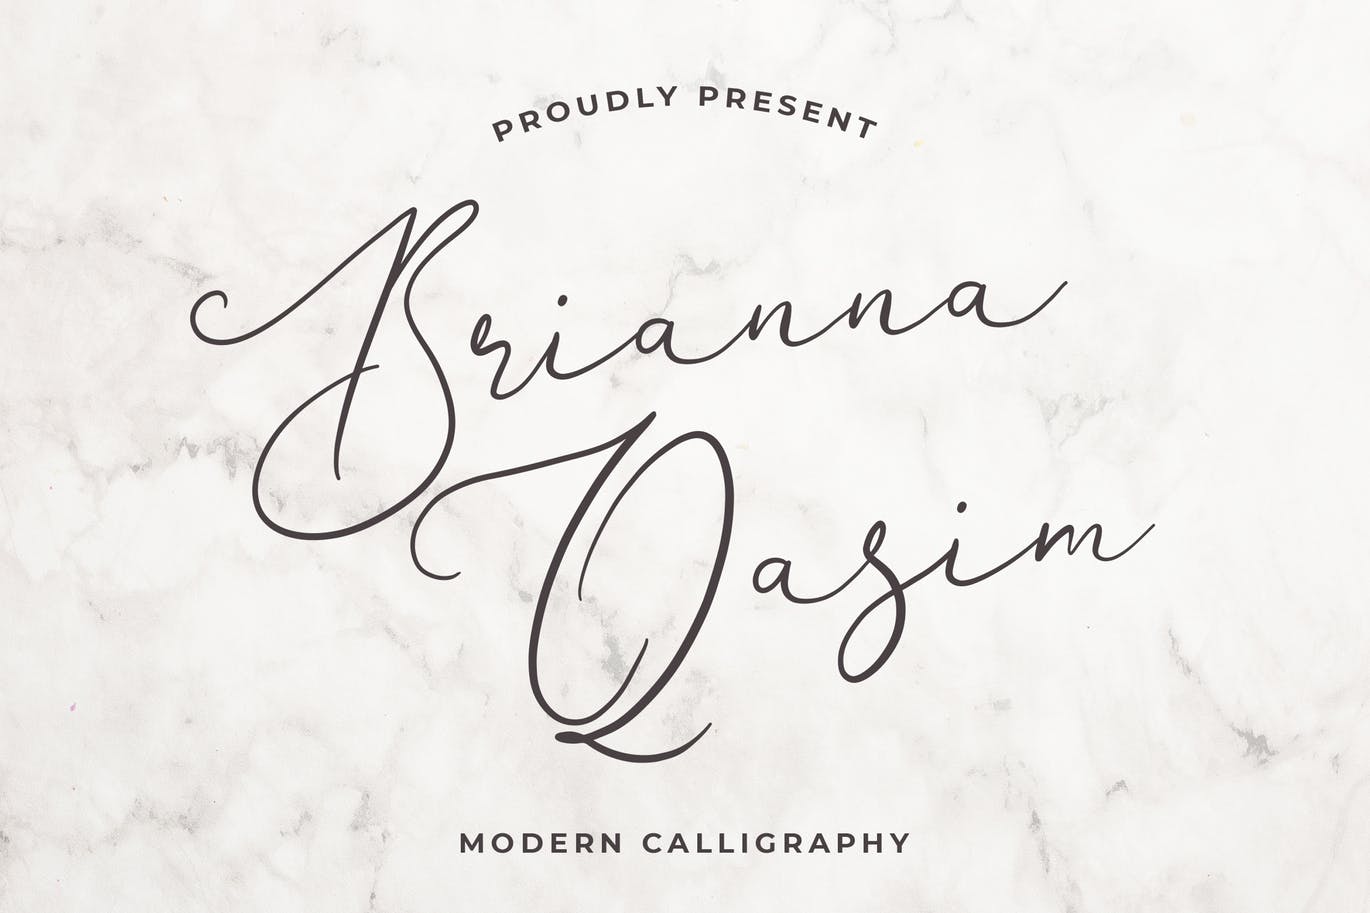 独特手写连笔书法英文字体16设计素材网精选 Brianna Qasim Beautiful Calligraphy Font插图